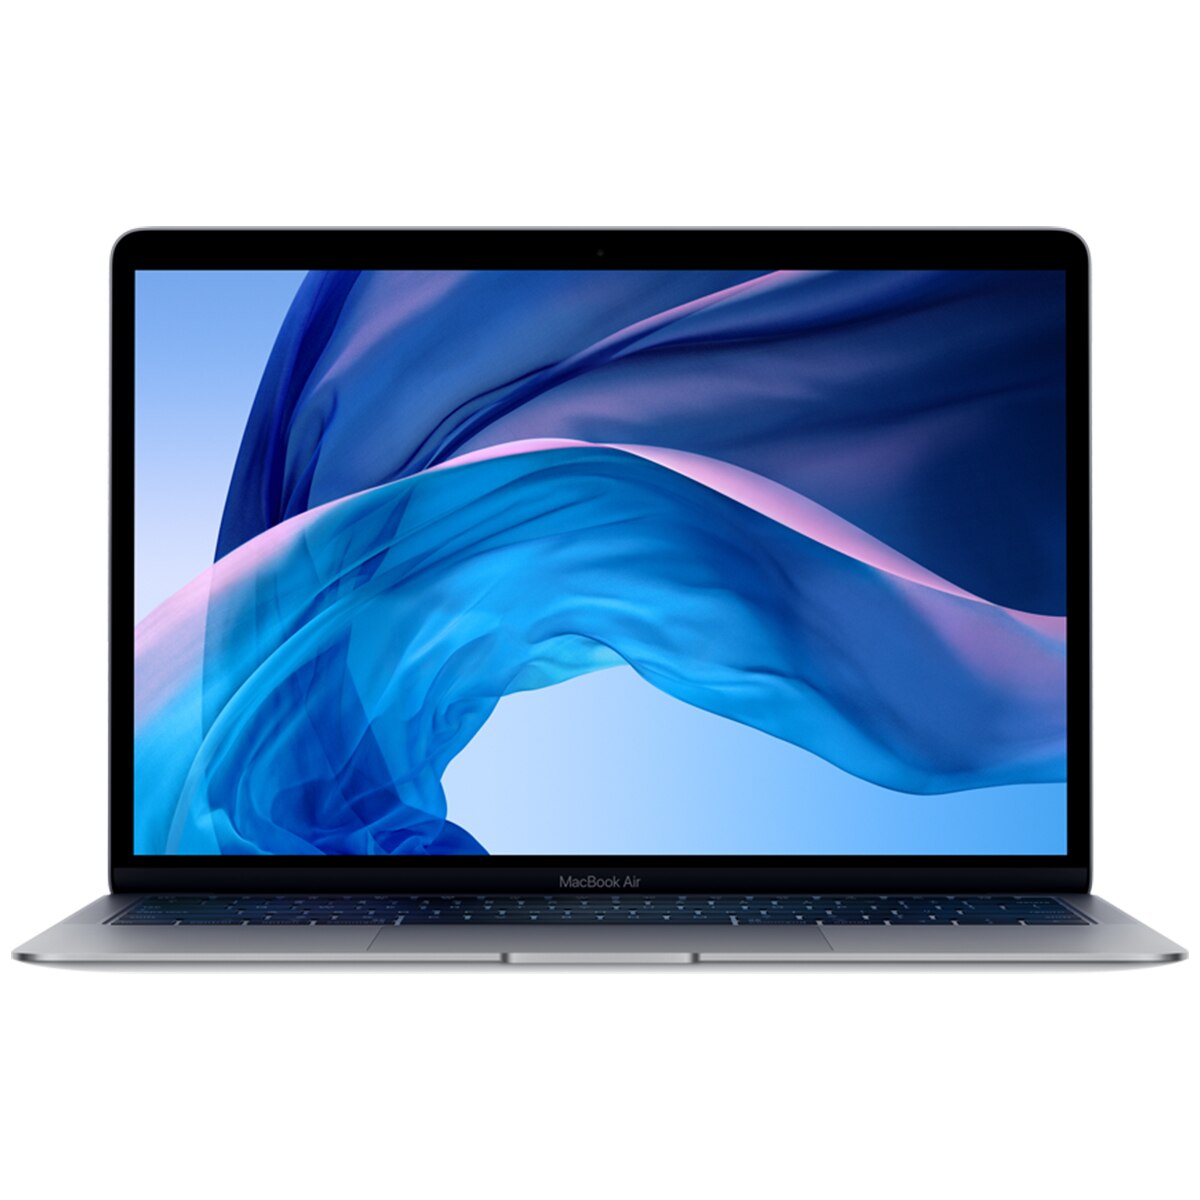 Macbook Air MVFJ2X/A 13-inch MacBook Air: 1.6GHz dual-core 8th-generation Intel Core i5 processor, 256GB - Space Grey